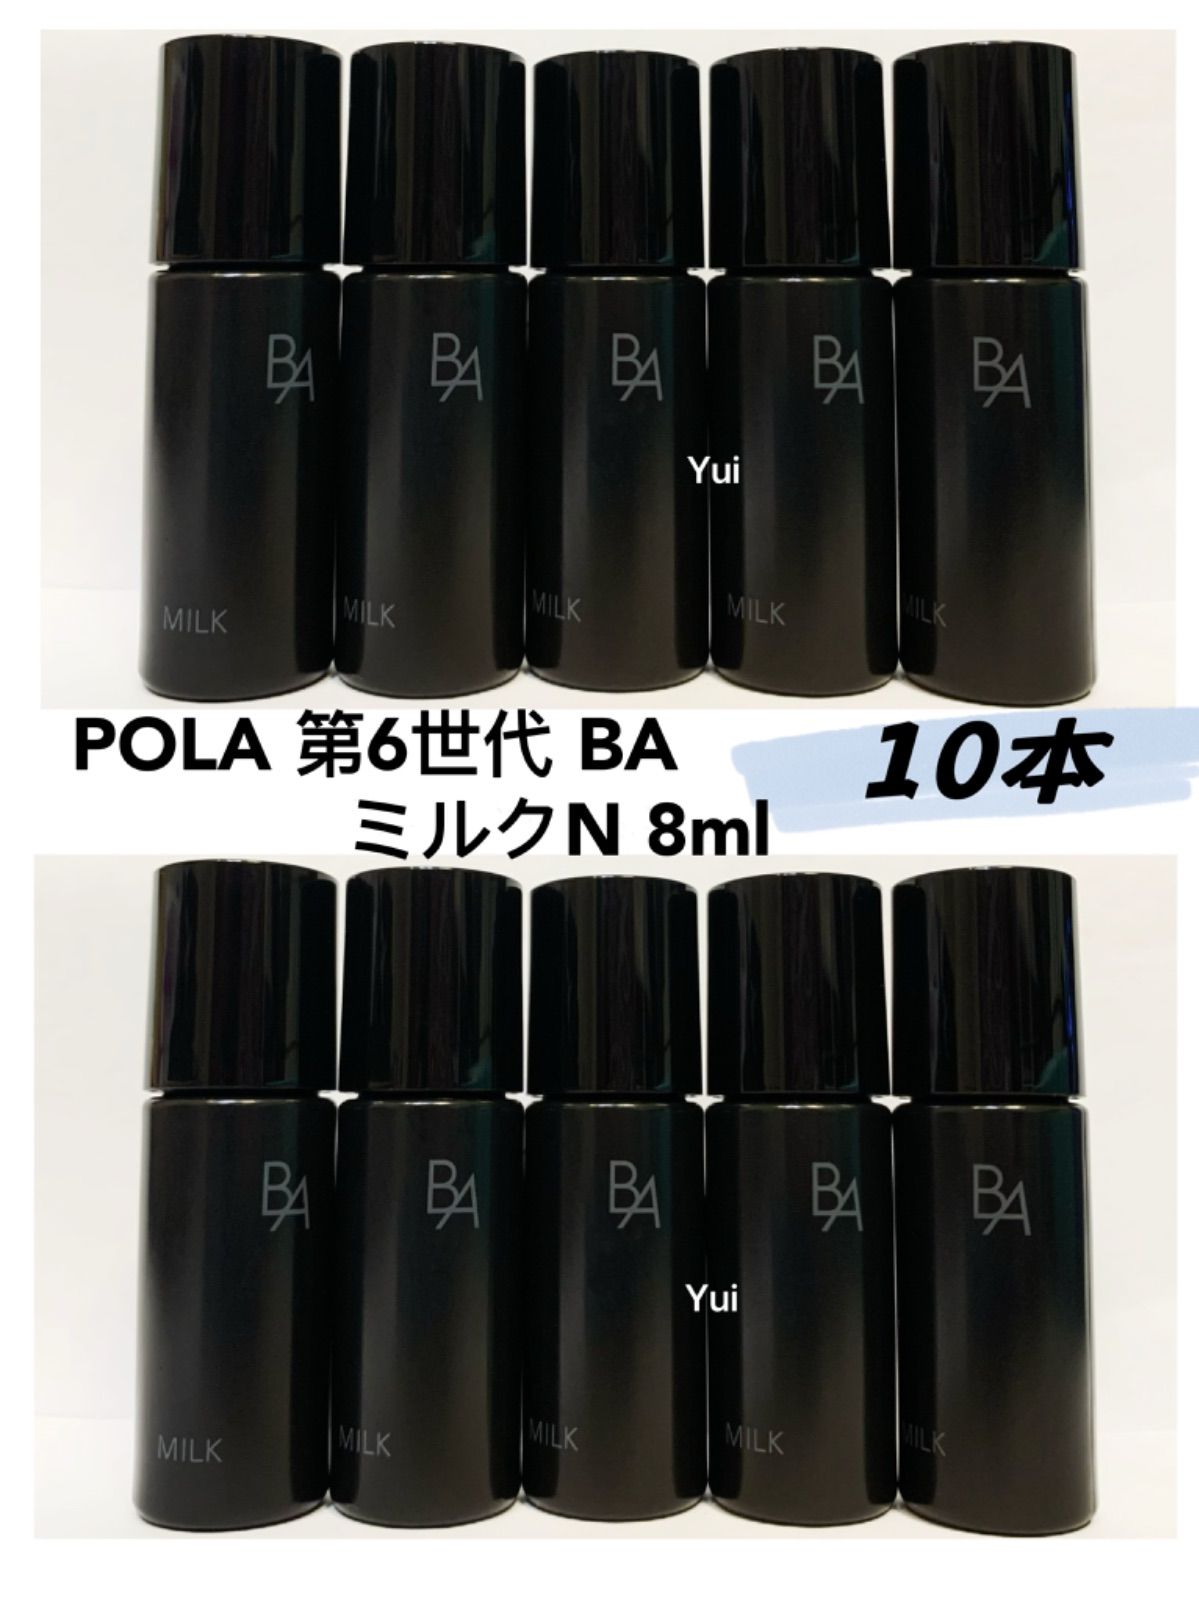 ポーラ B.A ザ ミルク80ml - スキンケア/基礎化粧品